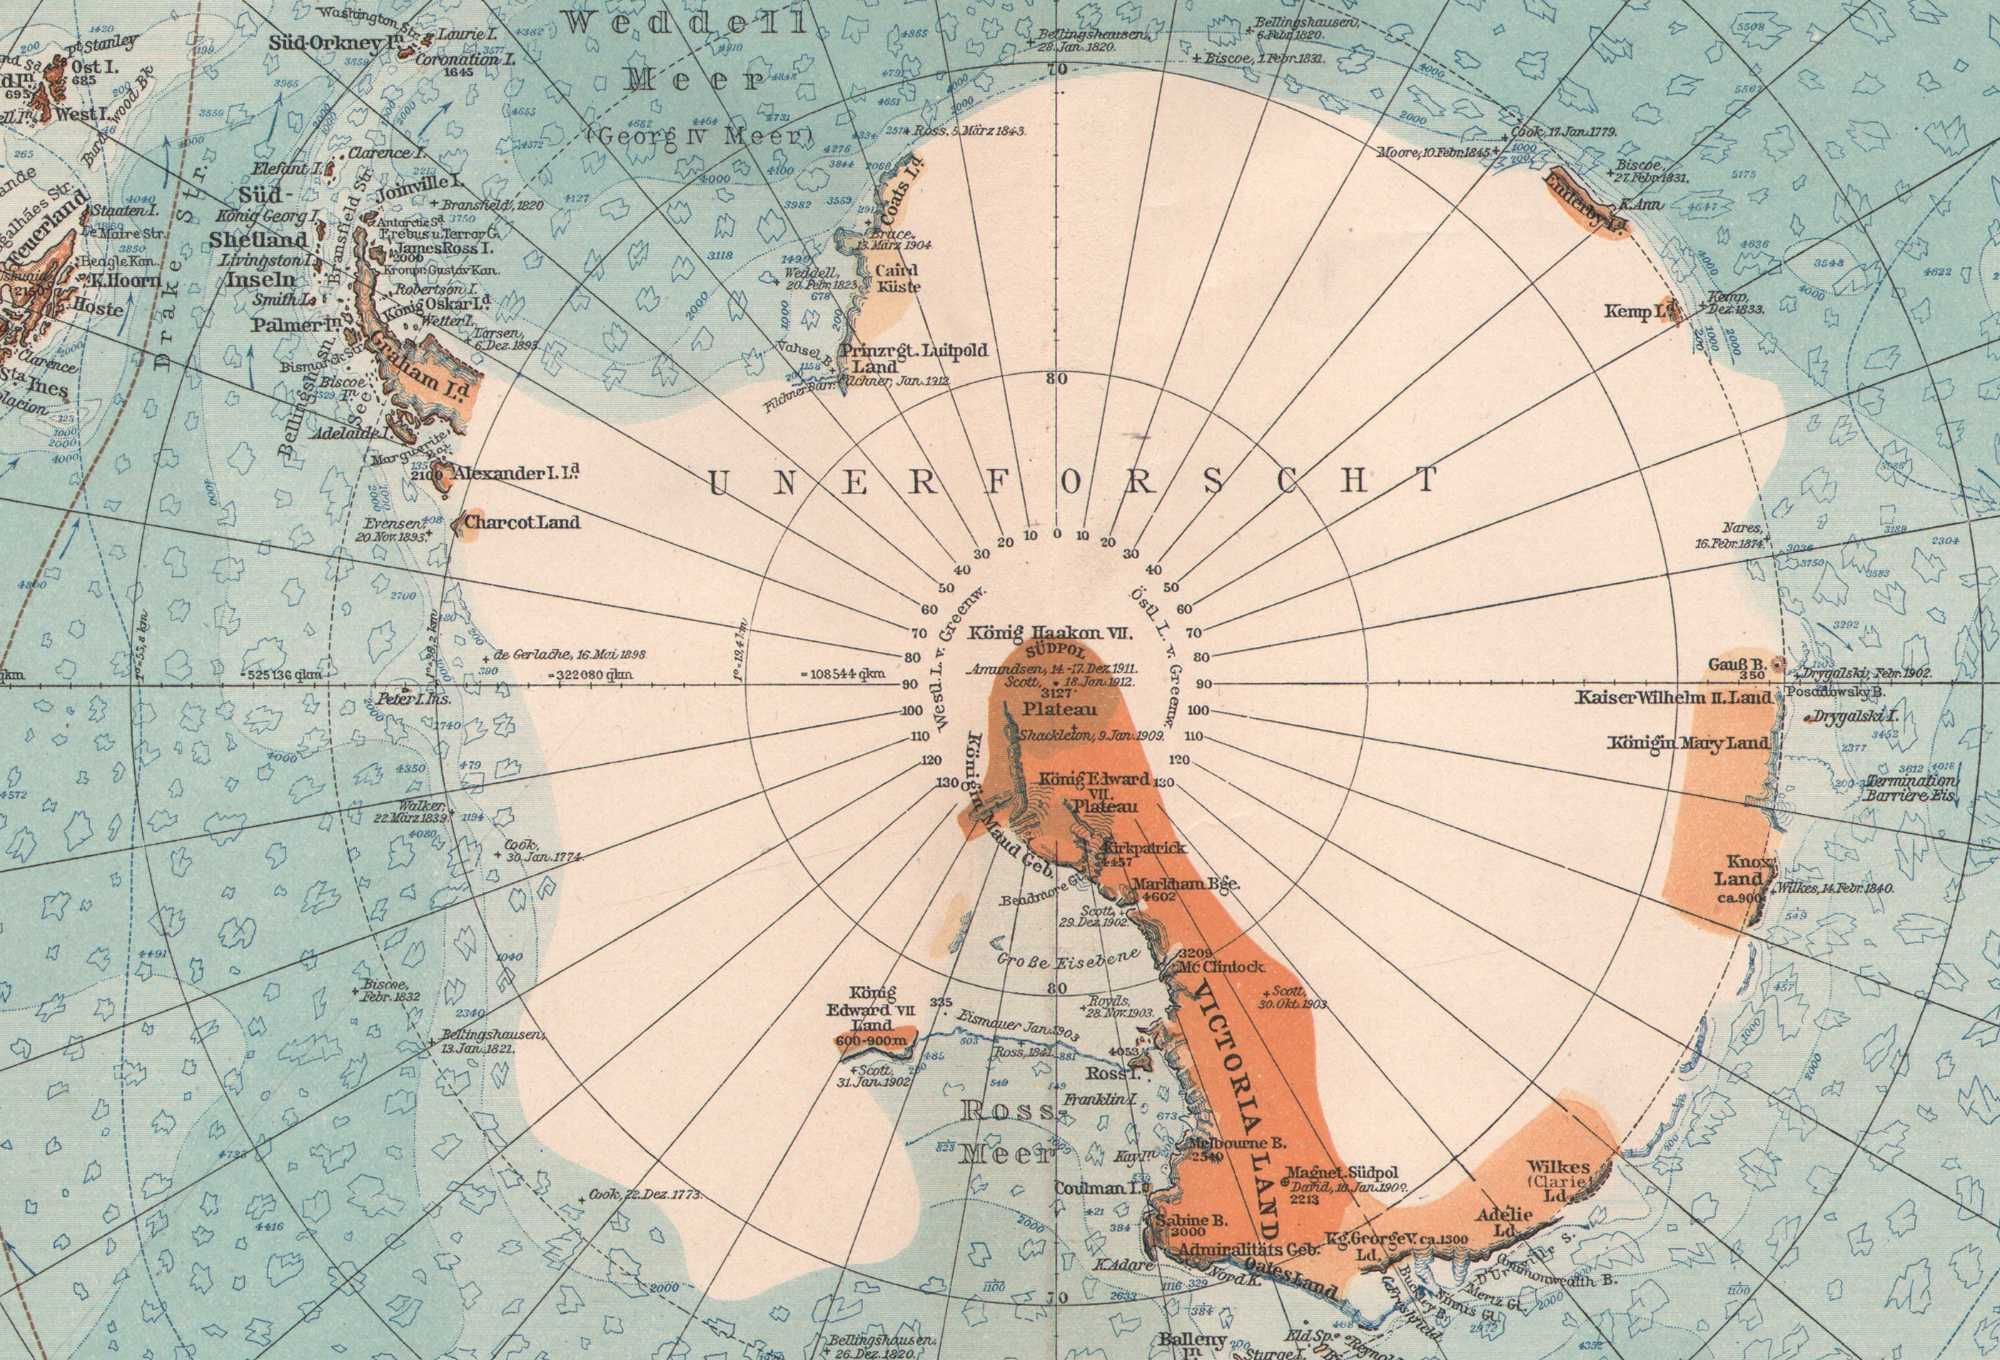 Antarktyda Biegun Pd. Wyprawy polarne duża efektowna mapa 1922 r. aute